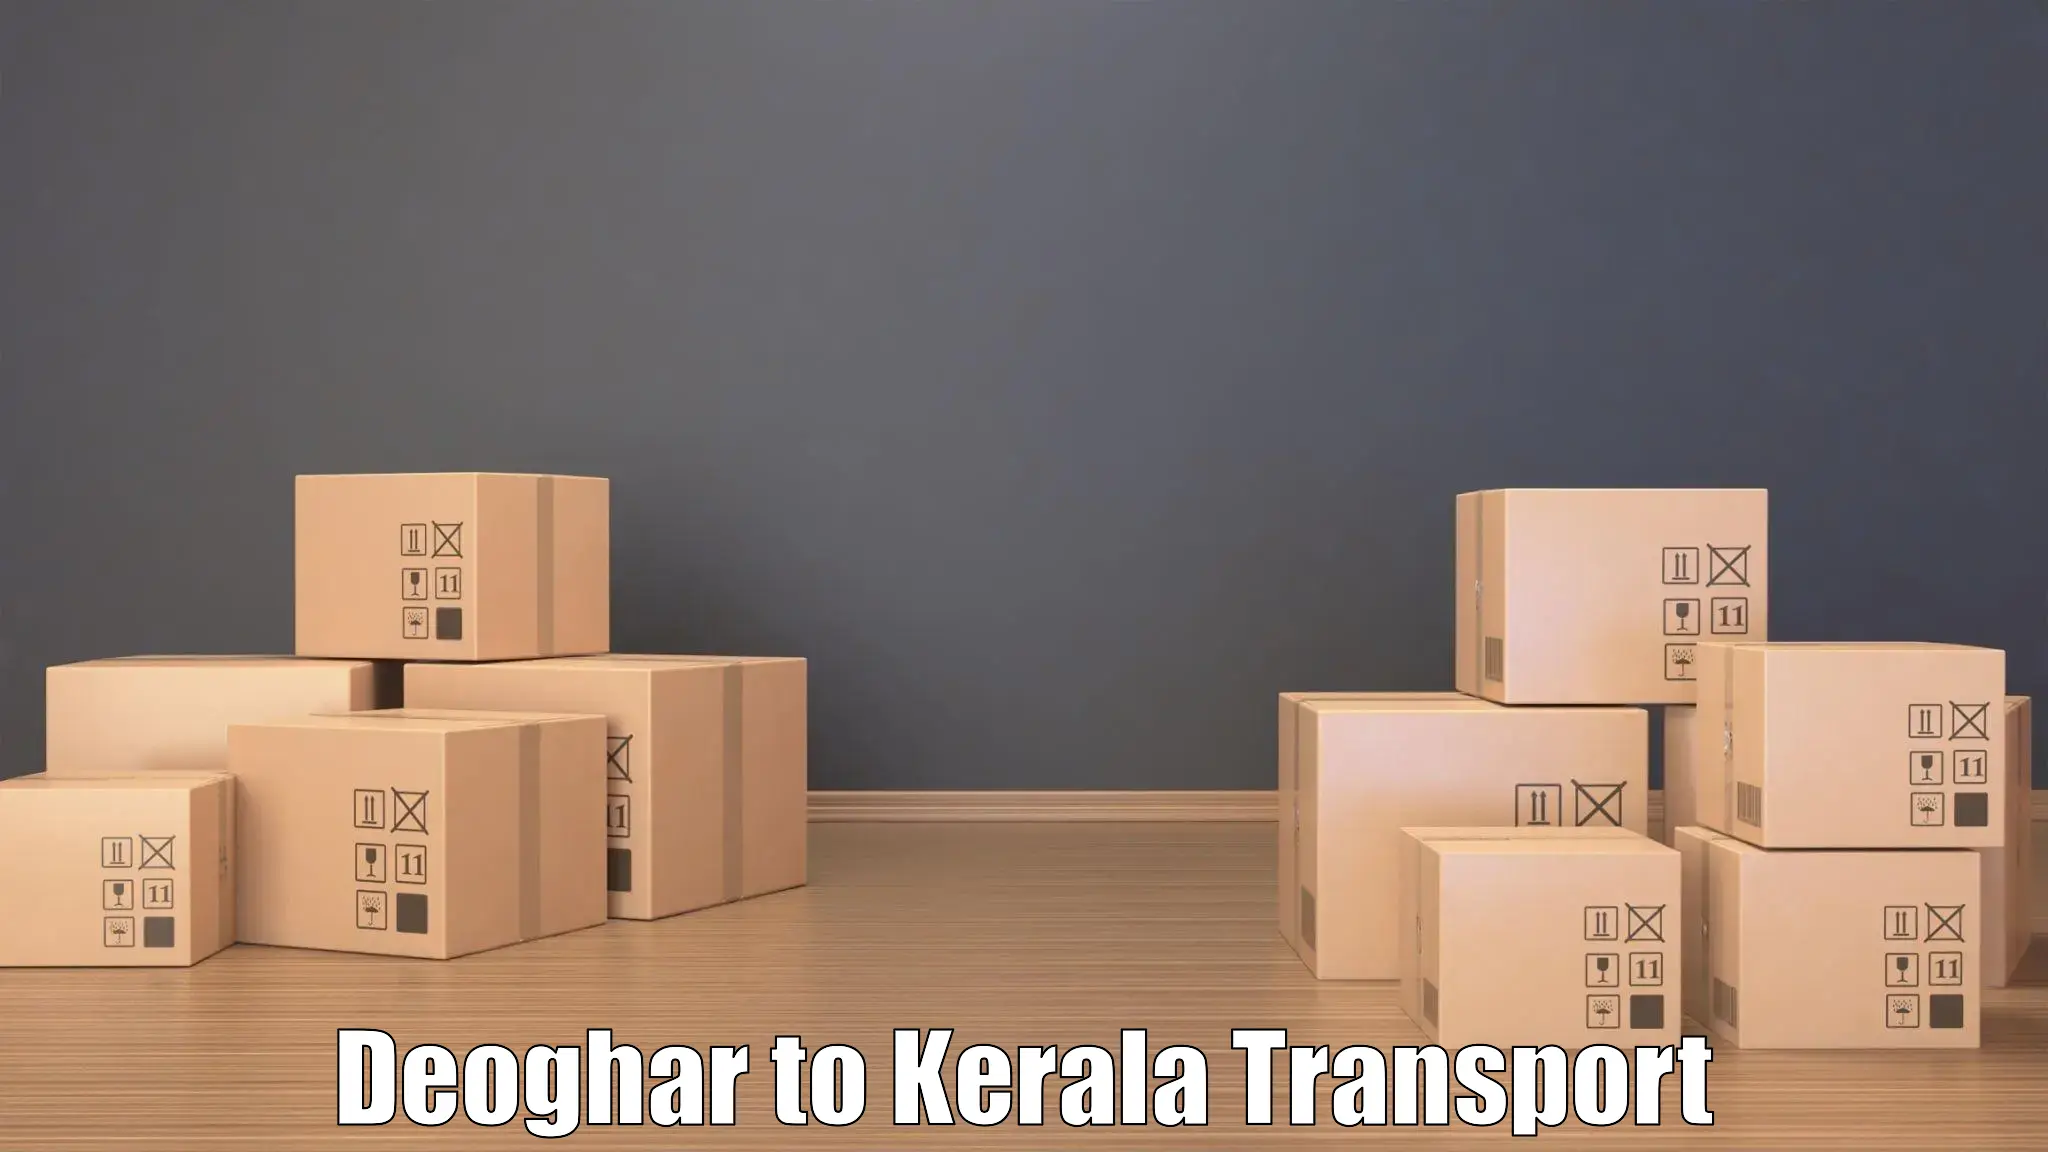 Furniture transport service Deoghar to Kozhikode